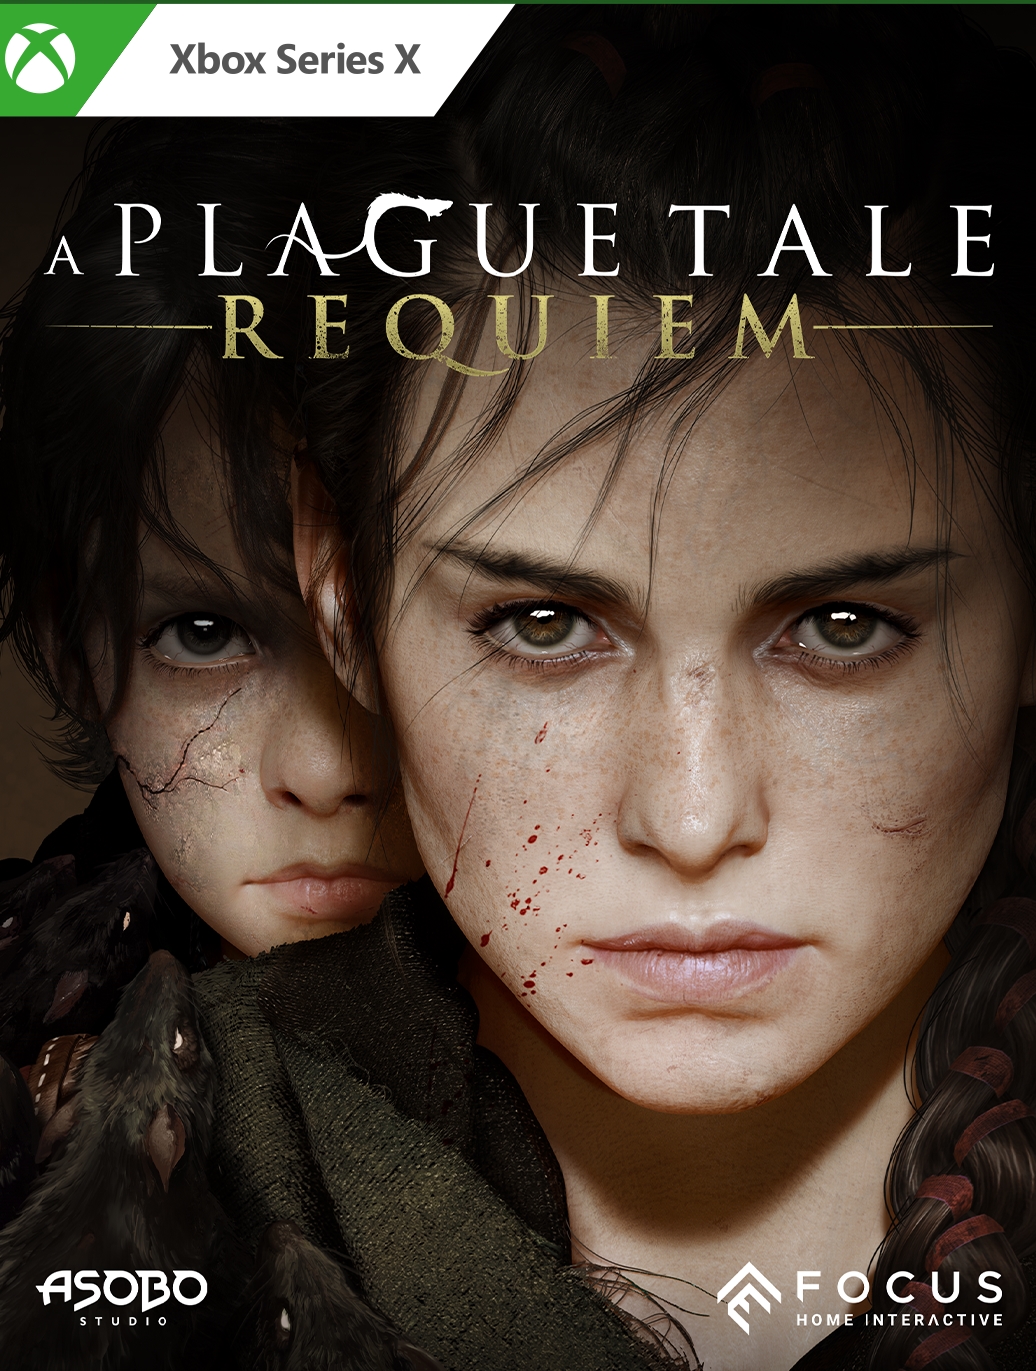 jaquette reduite de A Plague Tale: Requiem sur Xbox Series